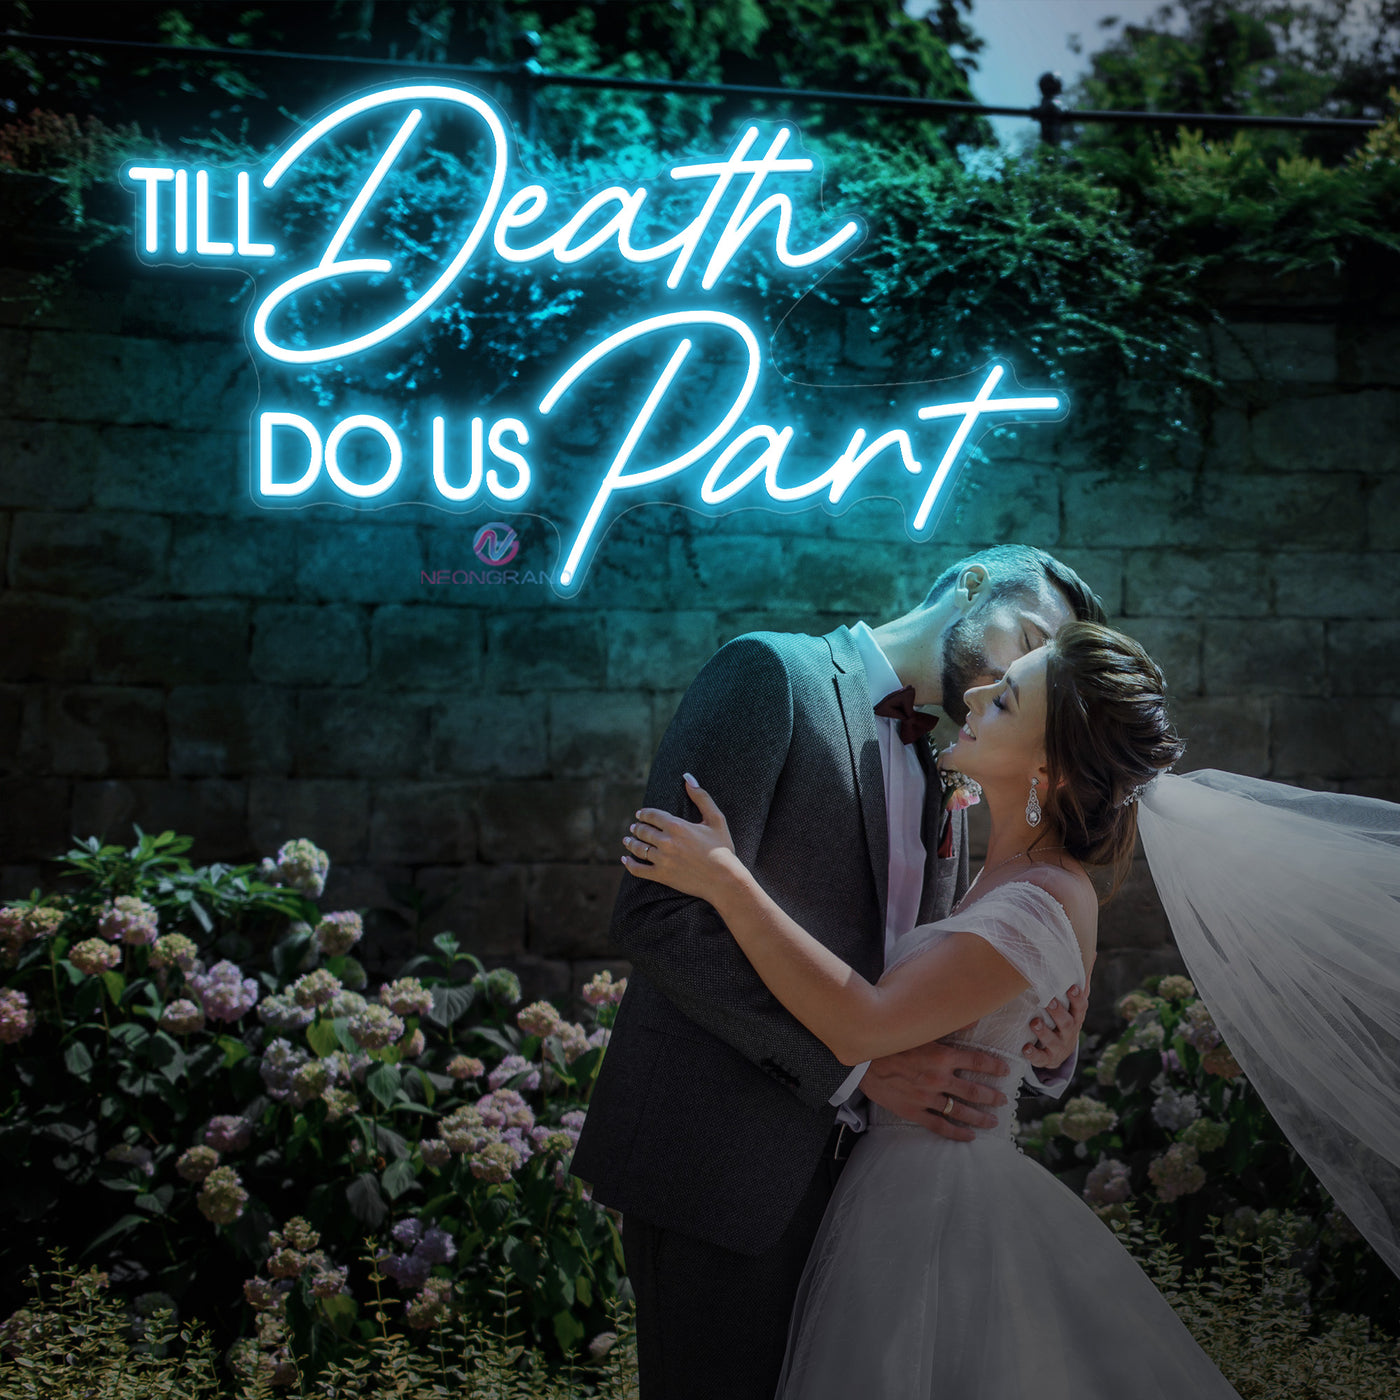 Til Death Do Us Part Neon Sign Wedding Led Light sky blue